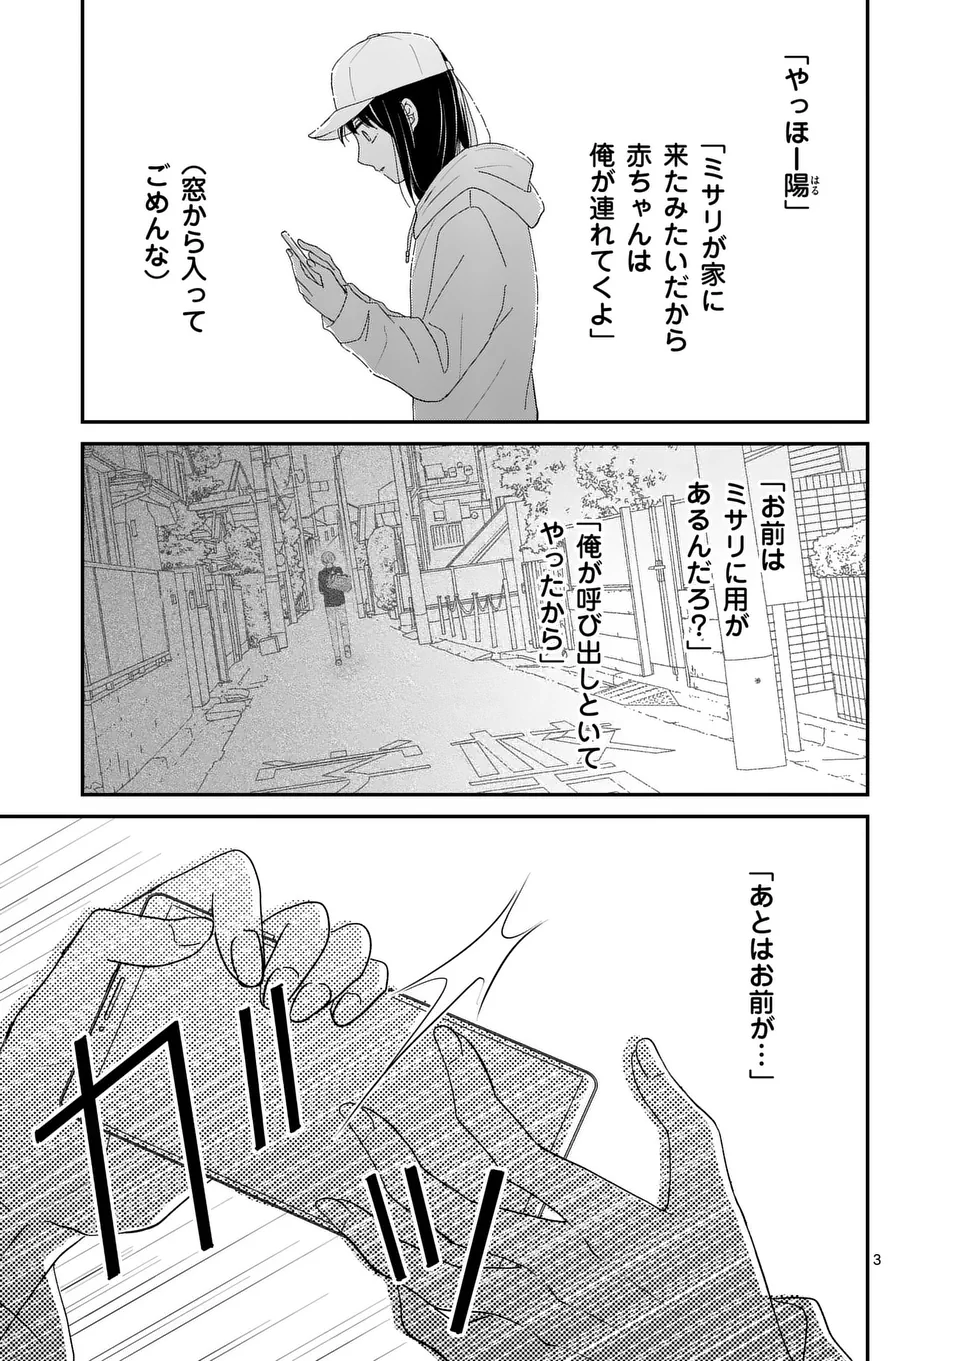 Atashi wo Ijimeta Kanojo no Ko - Chapter 2 - Page 3